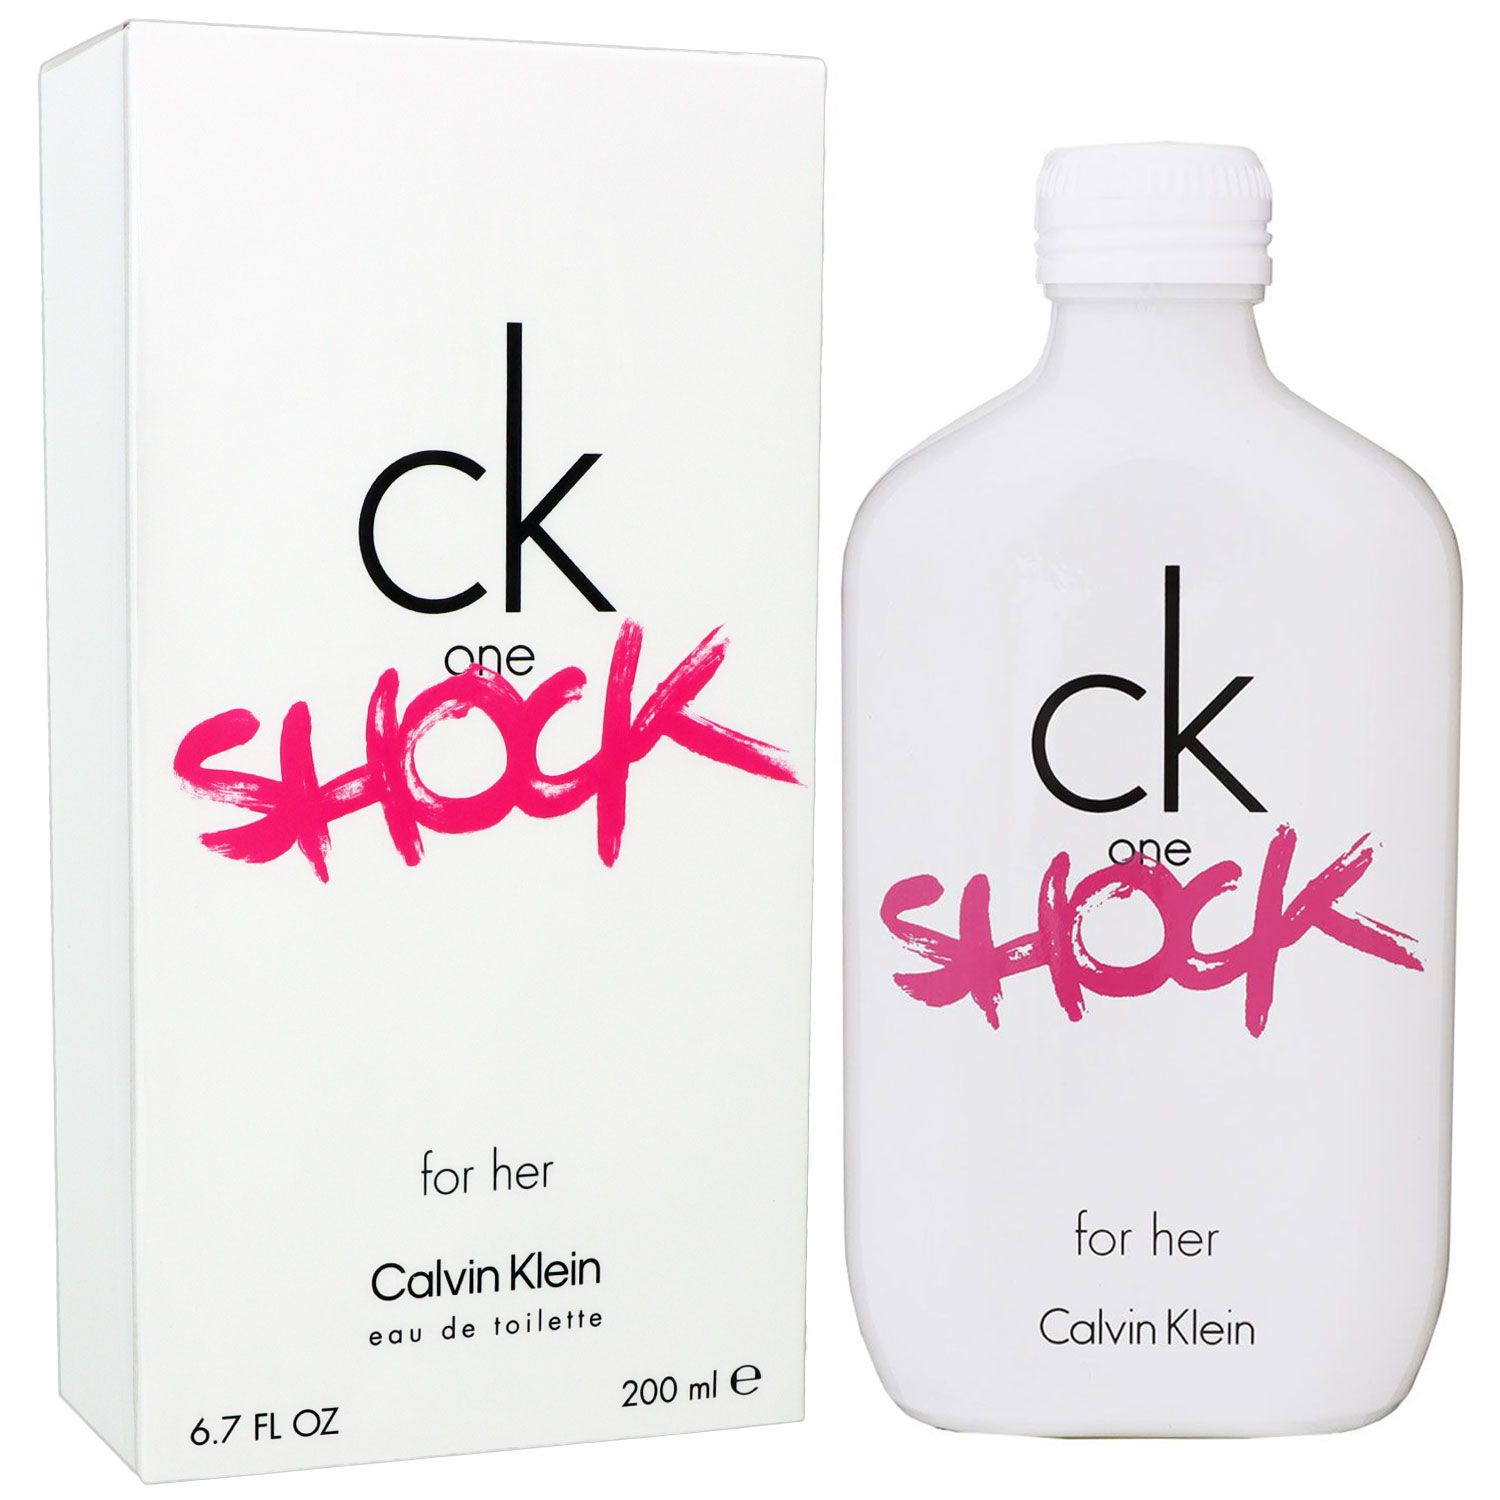 Calvin Klein CK Be 2 x 200 ml Eau de Toilette EDT Set bei Riemax